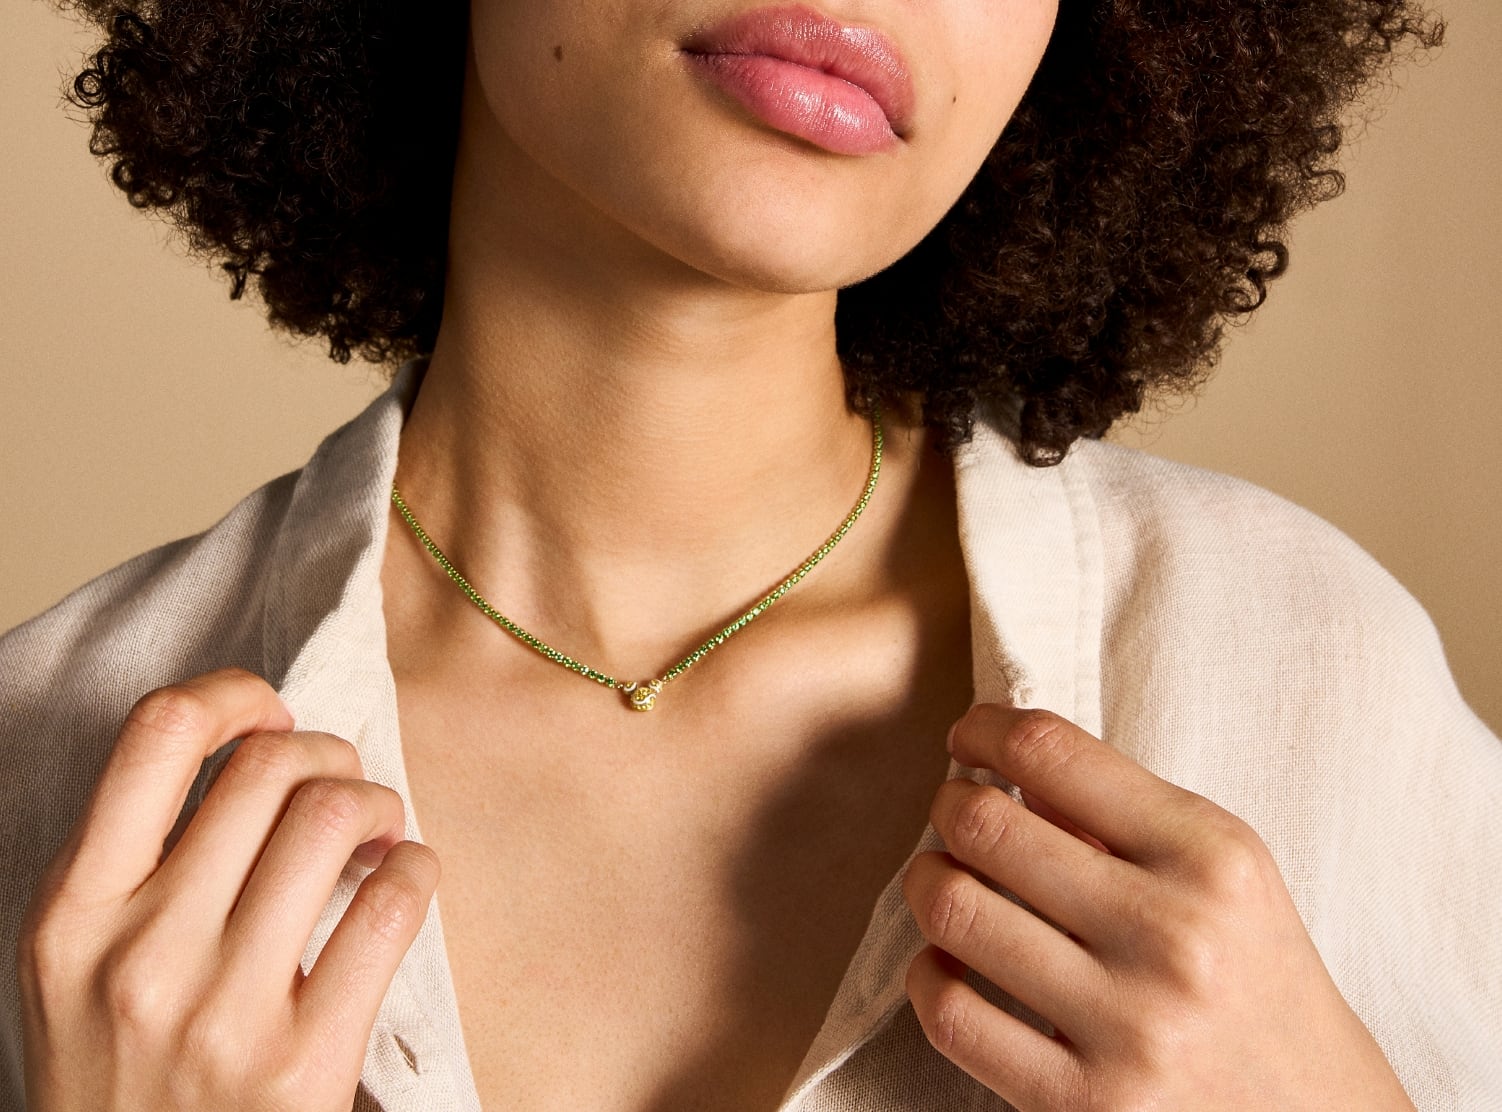 Das Bild zeigt eine Frau, die die Halskette zu einem legeren Hemd mit Knopfleiste trägt. Die Halskette hat eine kürzere Länge und reicht bis zu ihrem Schlüsselbein.